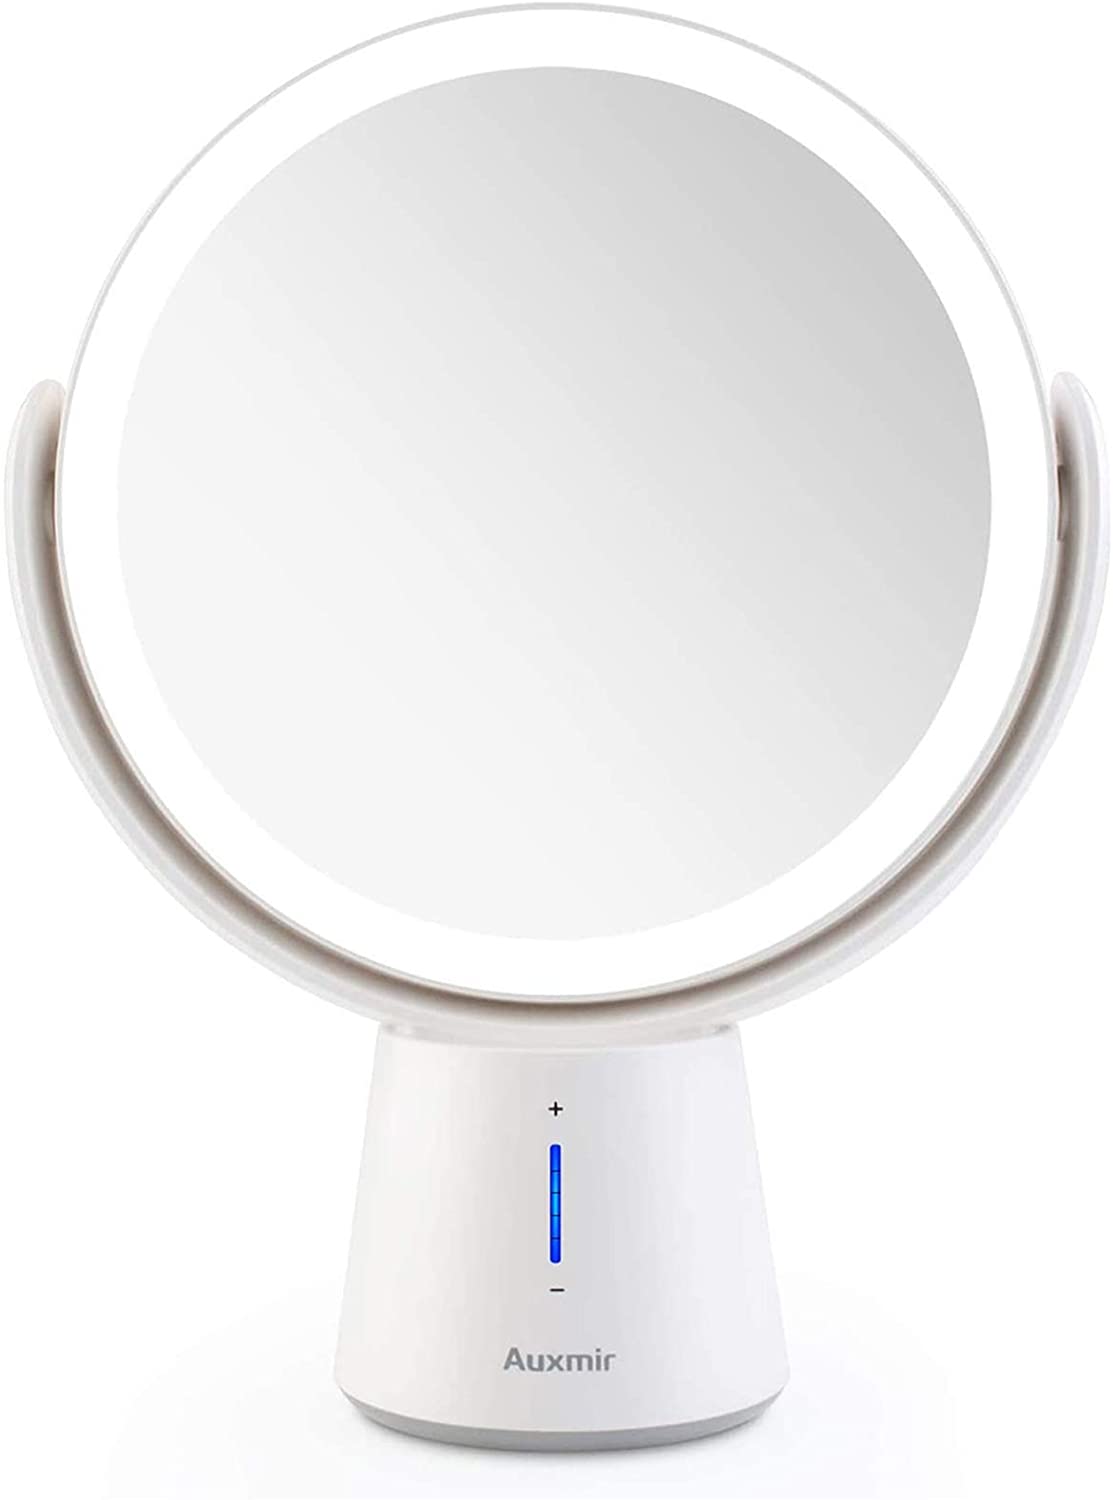 Auxmir Specchio Trucco LED Specchio Ingranditore 10X/1X a Doppia Faccia Luminosità Regolabile a 5 Livelli Rotazione a 360 ° Specchio da Tavolo Ideale per Trucco Rasatura Cura del Viso